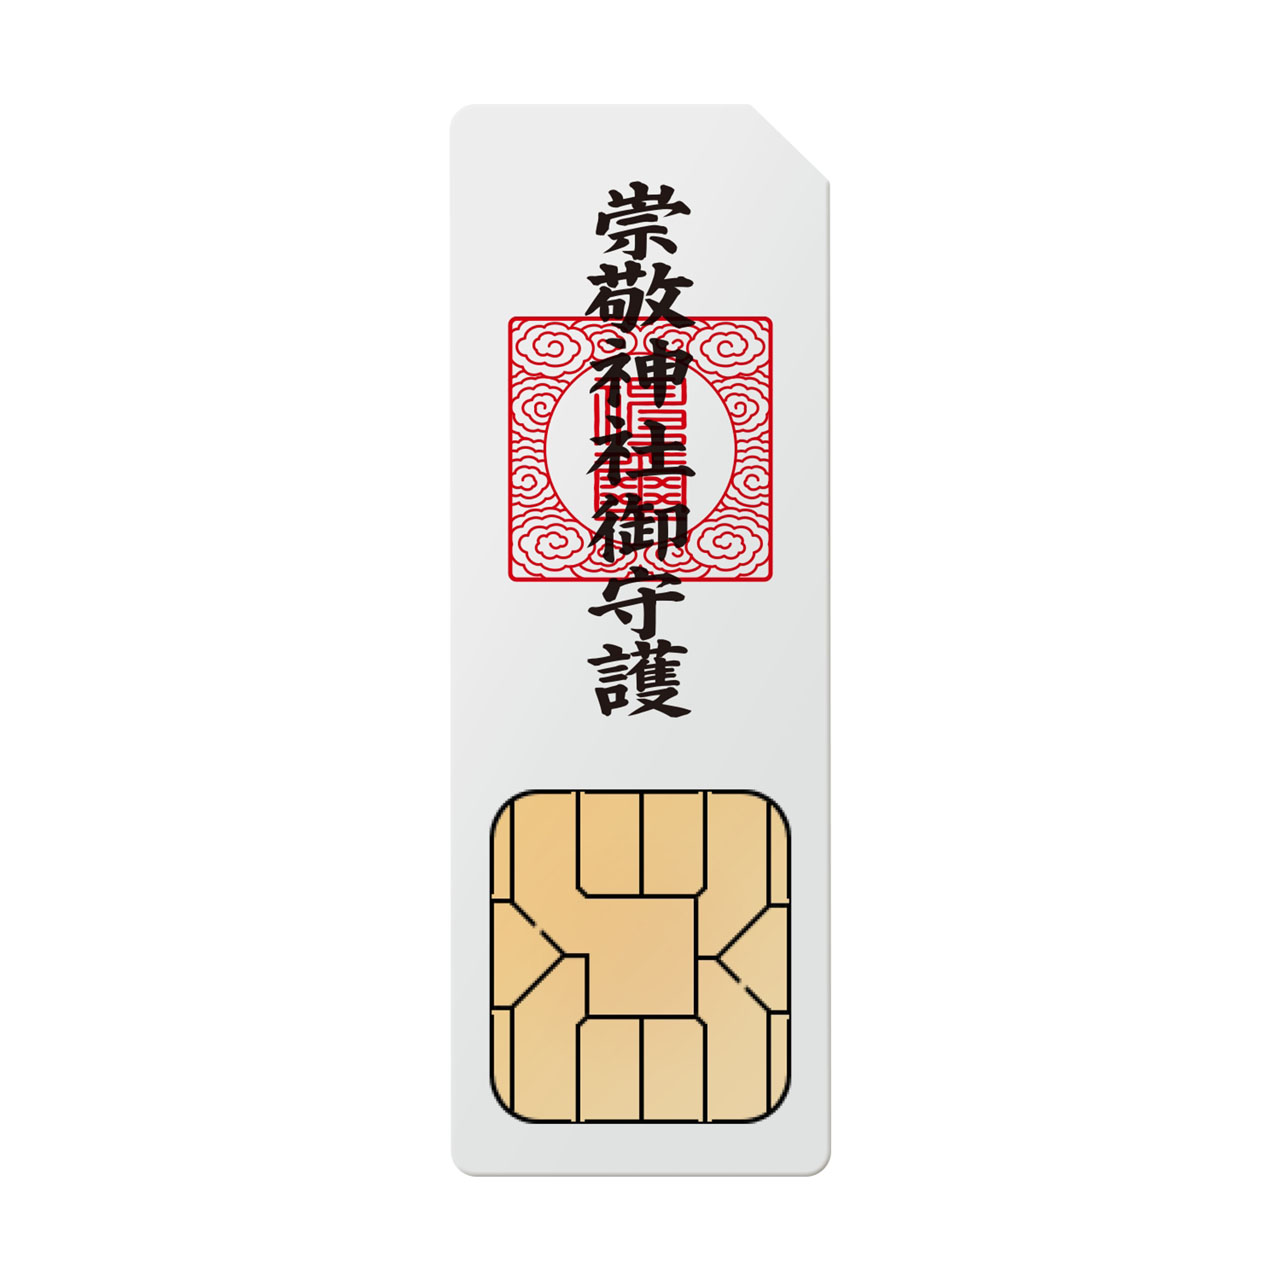 崇敬神社から授与される御札型のSIMカード「神社SIM」(仮)